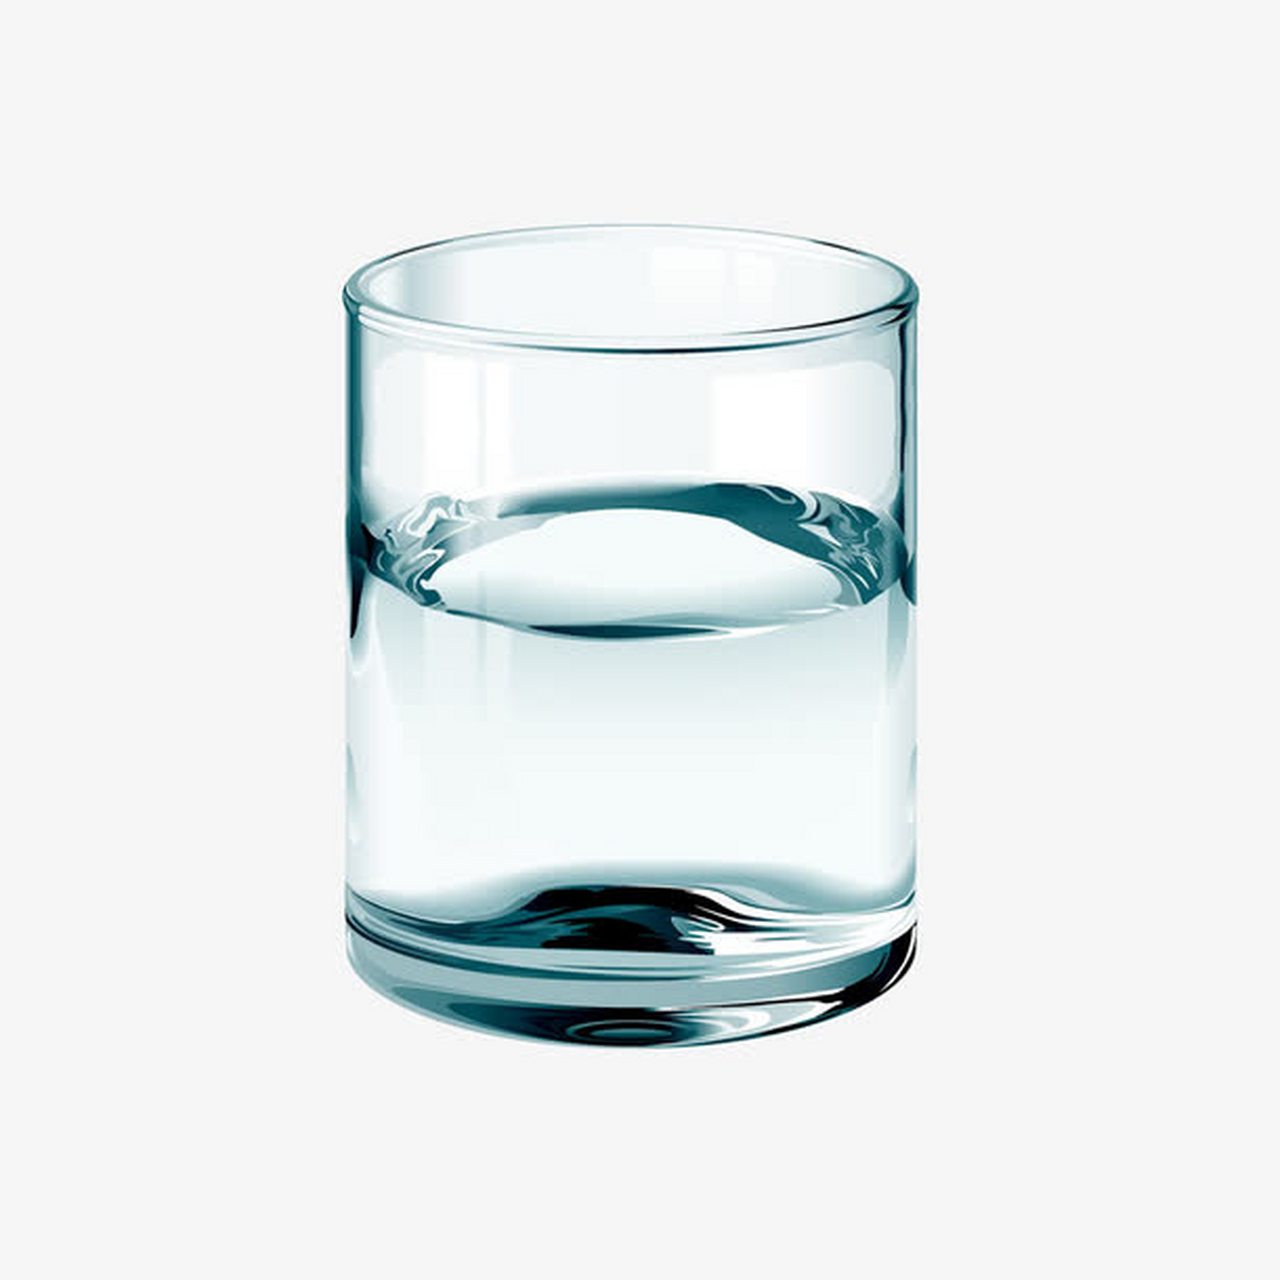 半杯水,乐观者认为还有半杯水,悲观者认为就剩半杯水了,客观的说就是